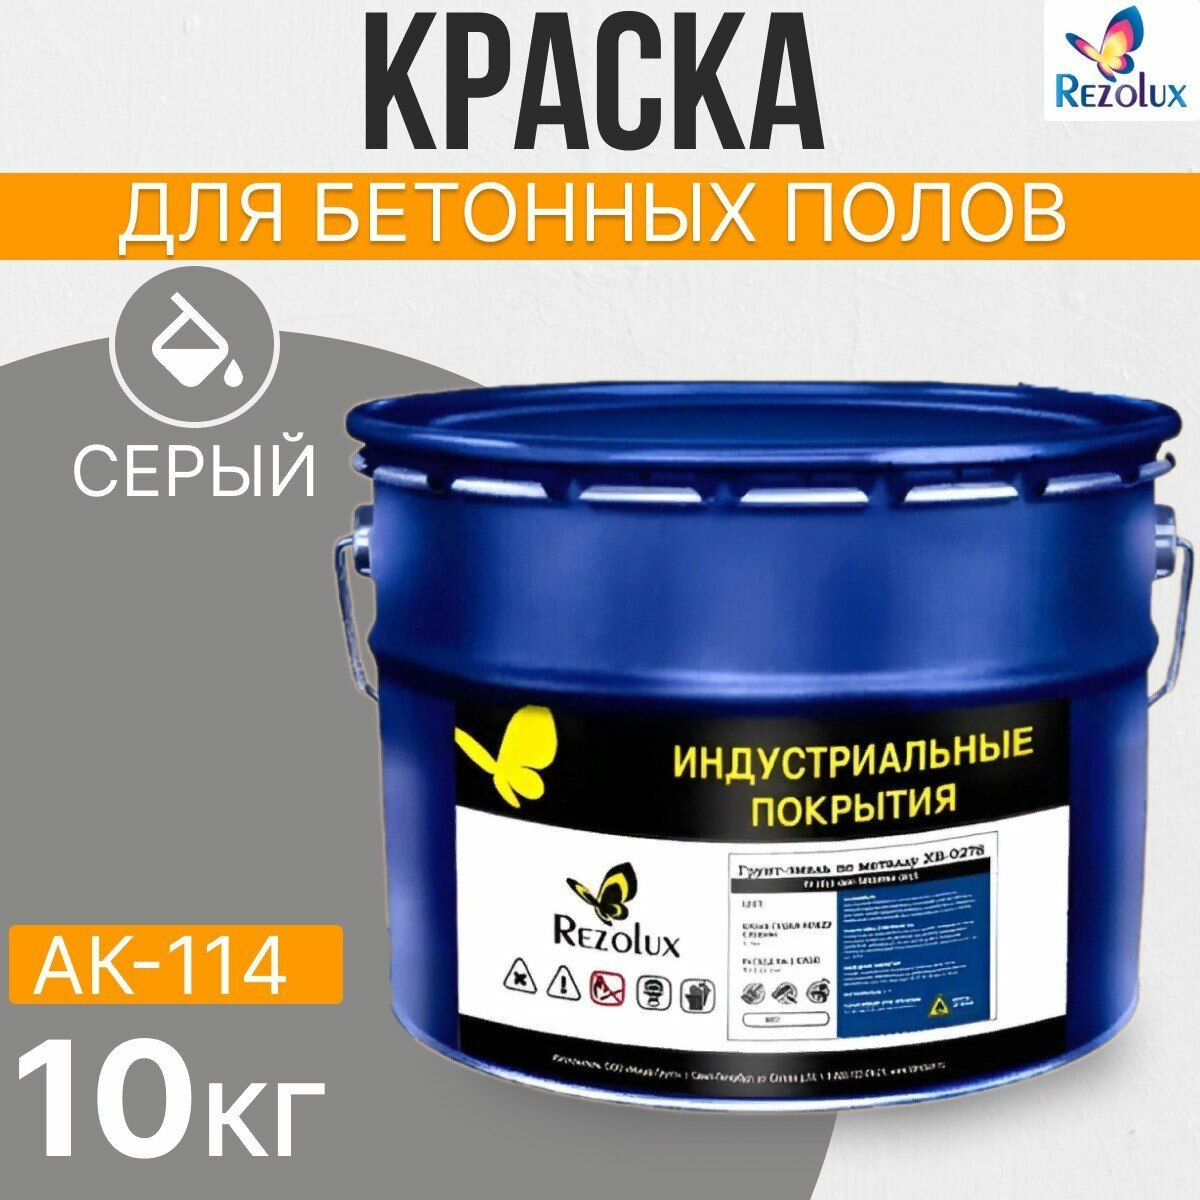 Краска для бетонных полов 10 кг, Rezolux АК-114, акриловая, влагостойкая, моющаяся, цвет серый.